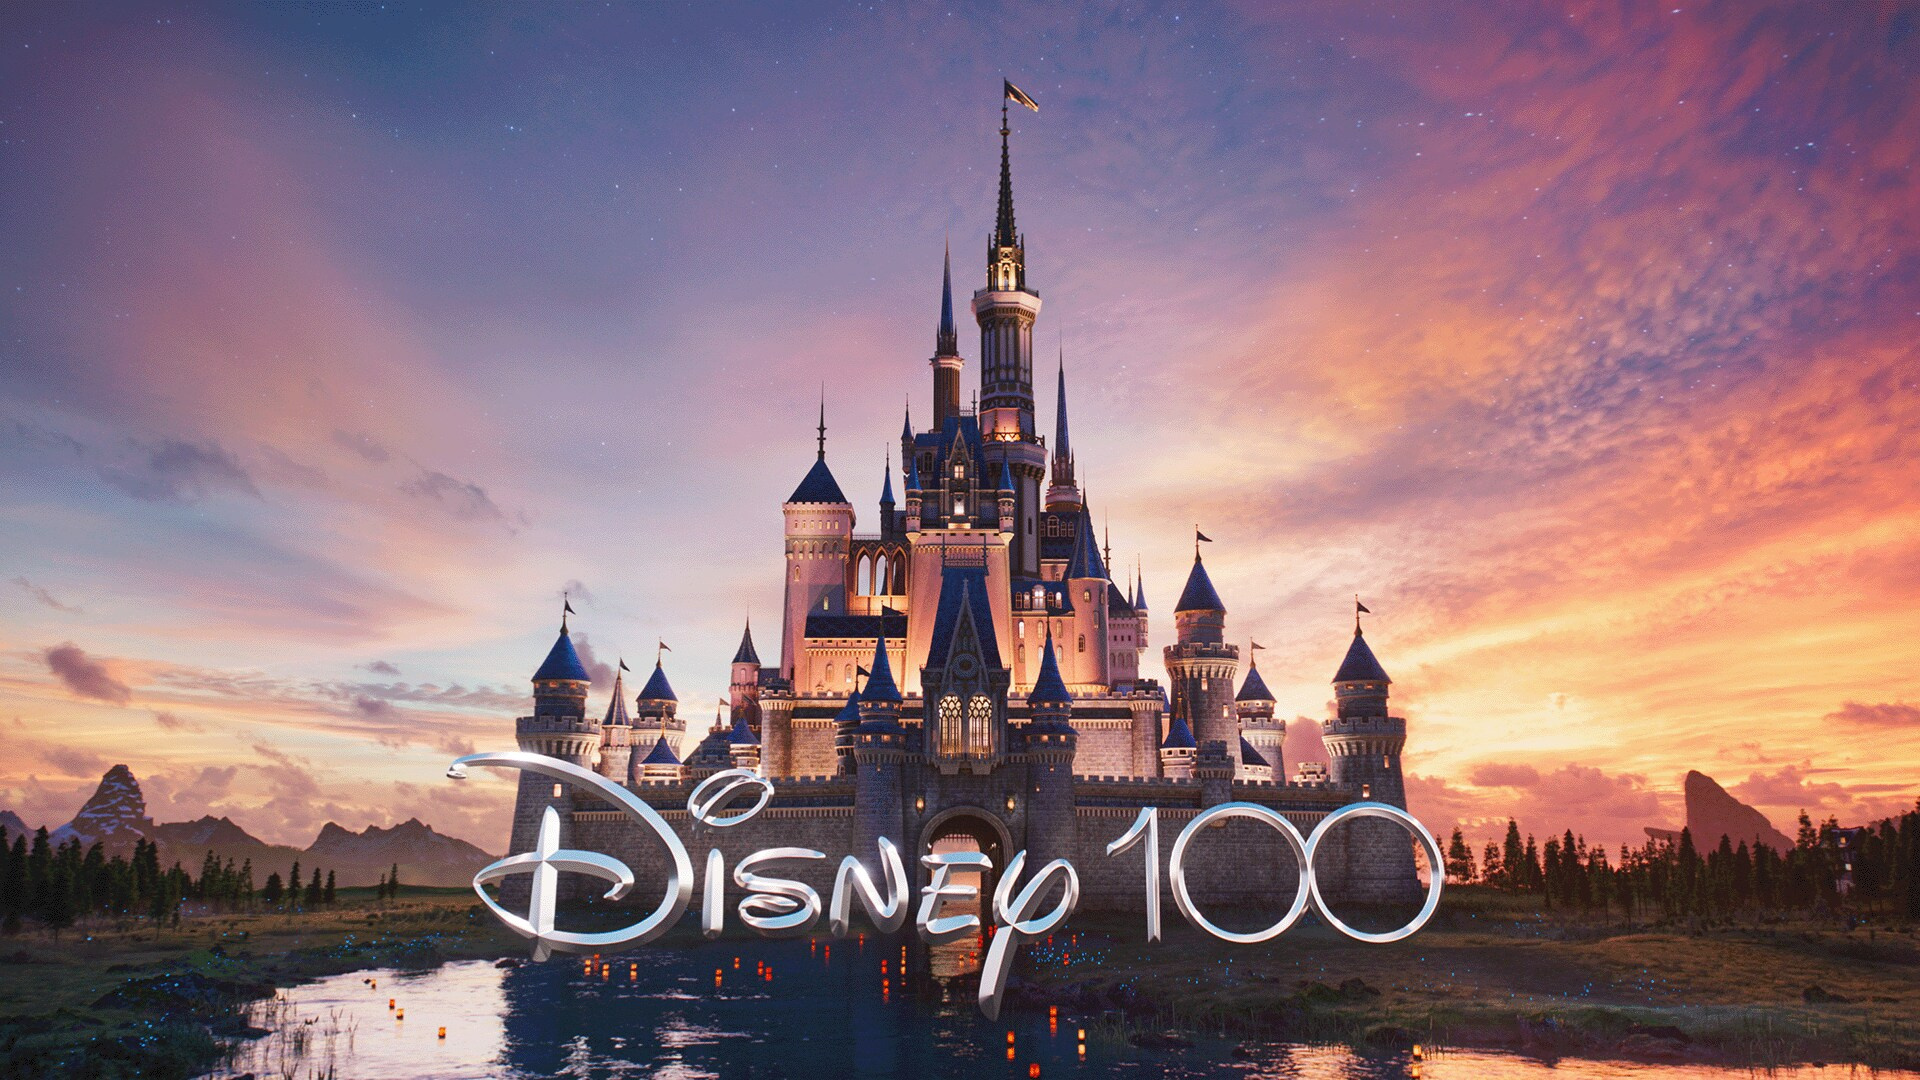 迪士尼100周年献礼片《星愿》全球票房遭滑铁卢